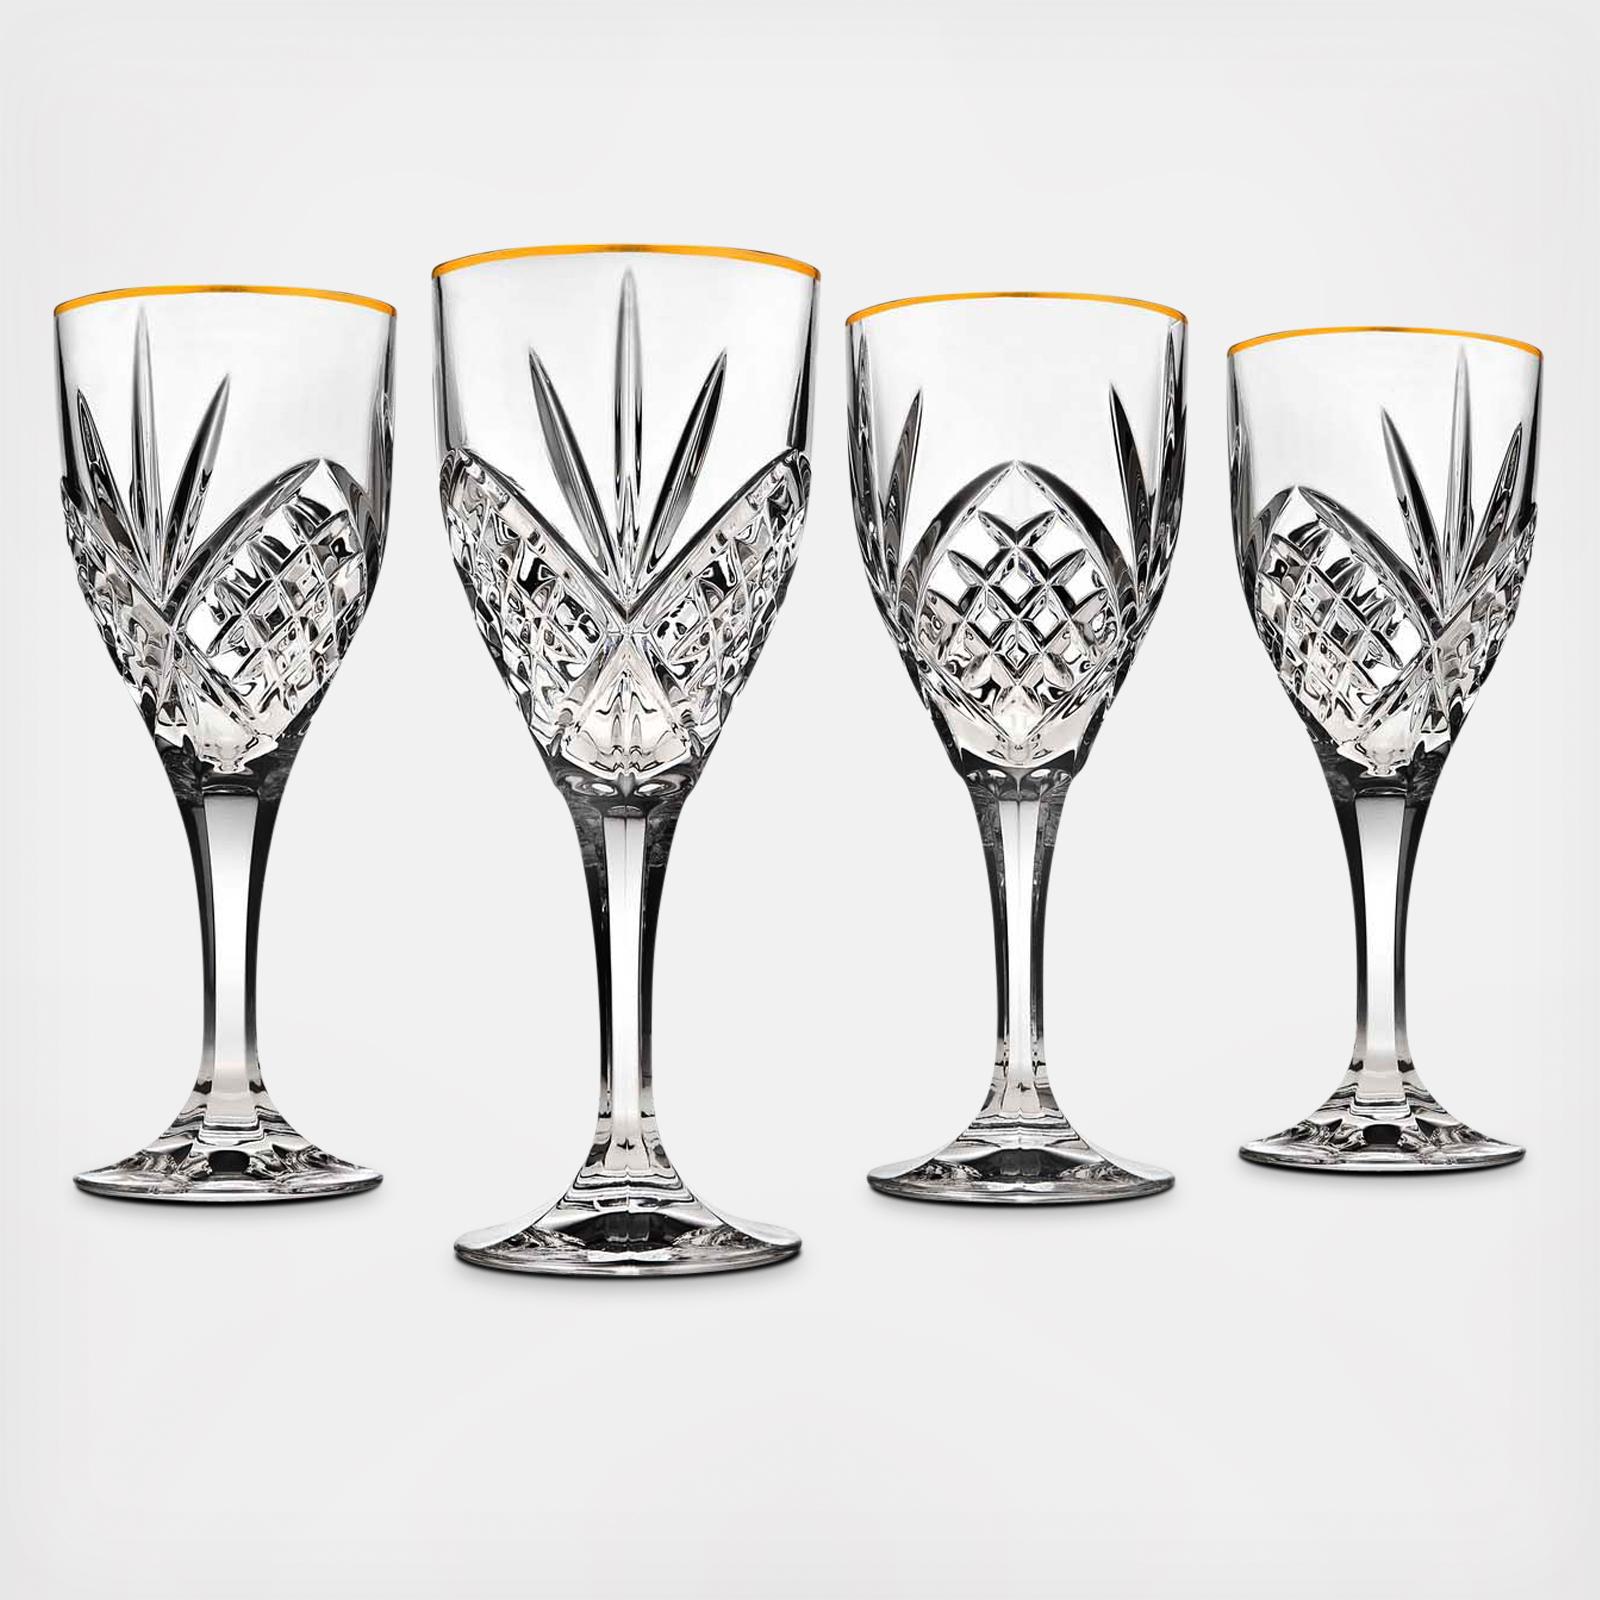 Godinger Dublin Stemless Wine Glasses, Set of 4